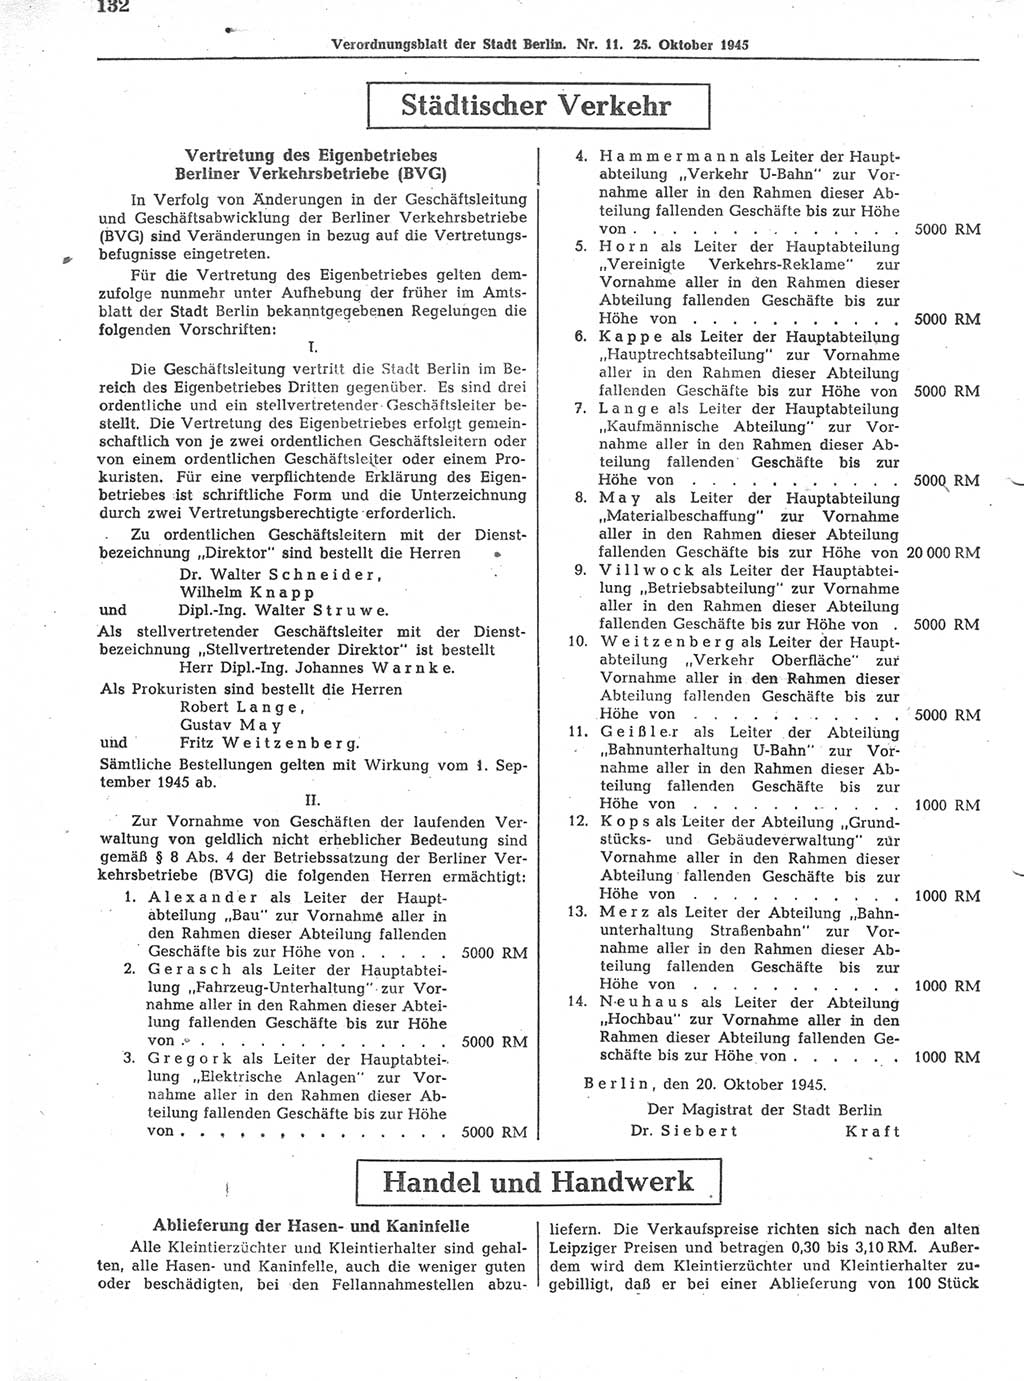 Verordnungsblatt (VOBl.) der Stadt Berlin 1945, Seite 132 (VOBl. Bln. 1945, S. 132)